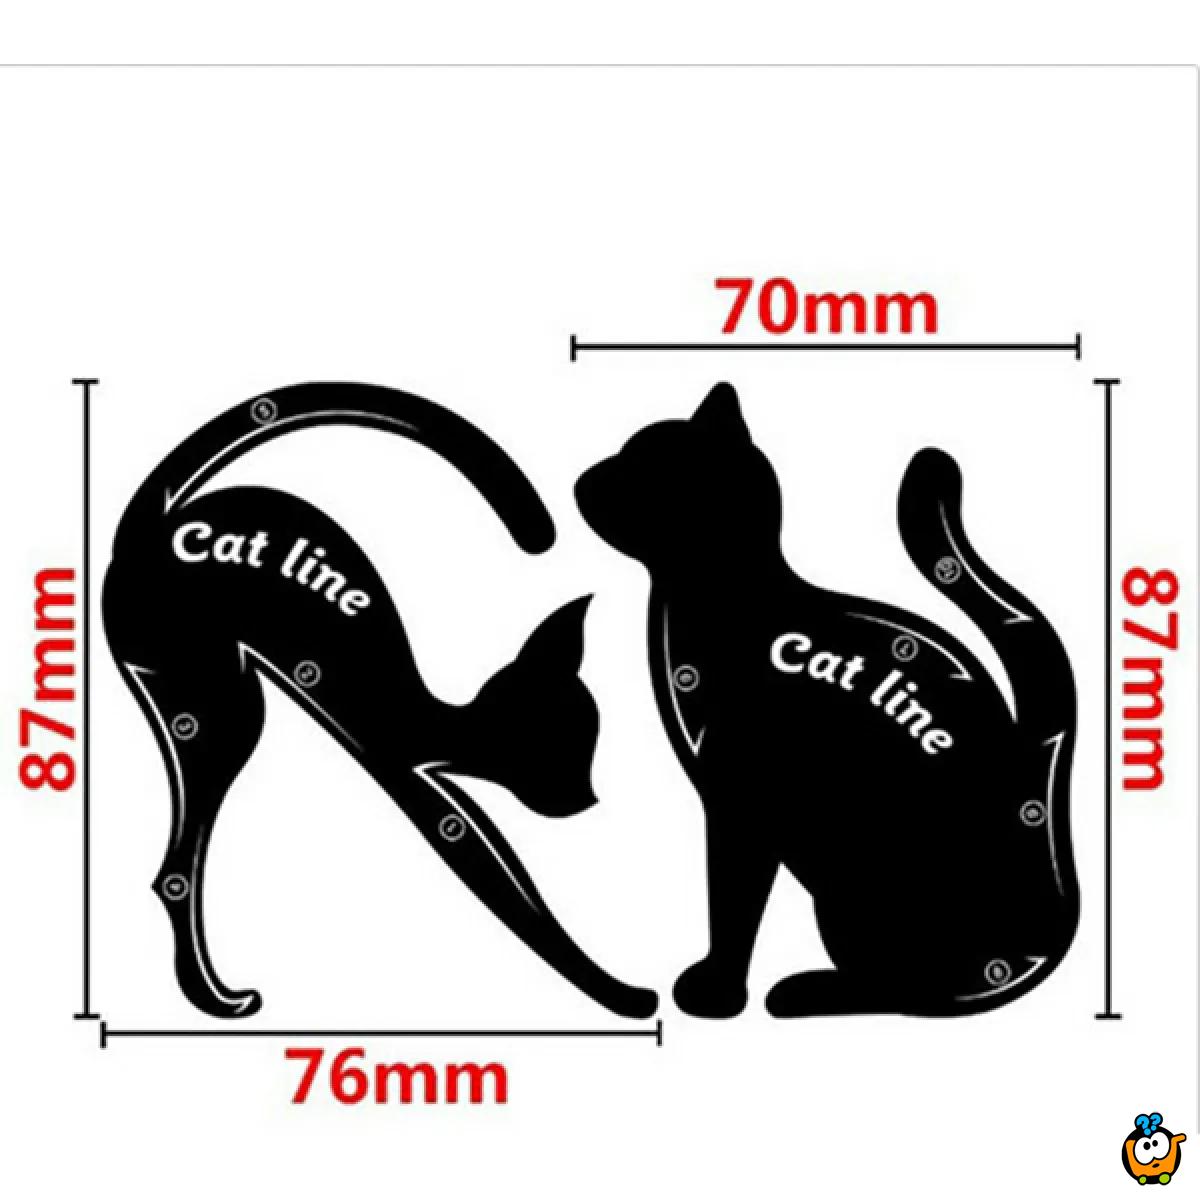 Cat line - Šablon za precizno nanošenje senke i ajlajnera u obliku mace